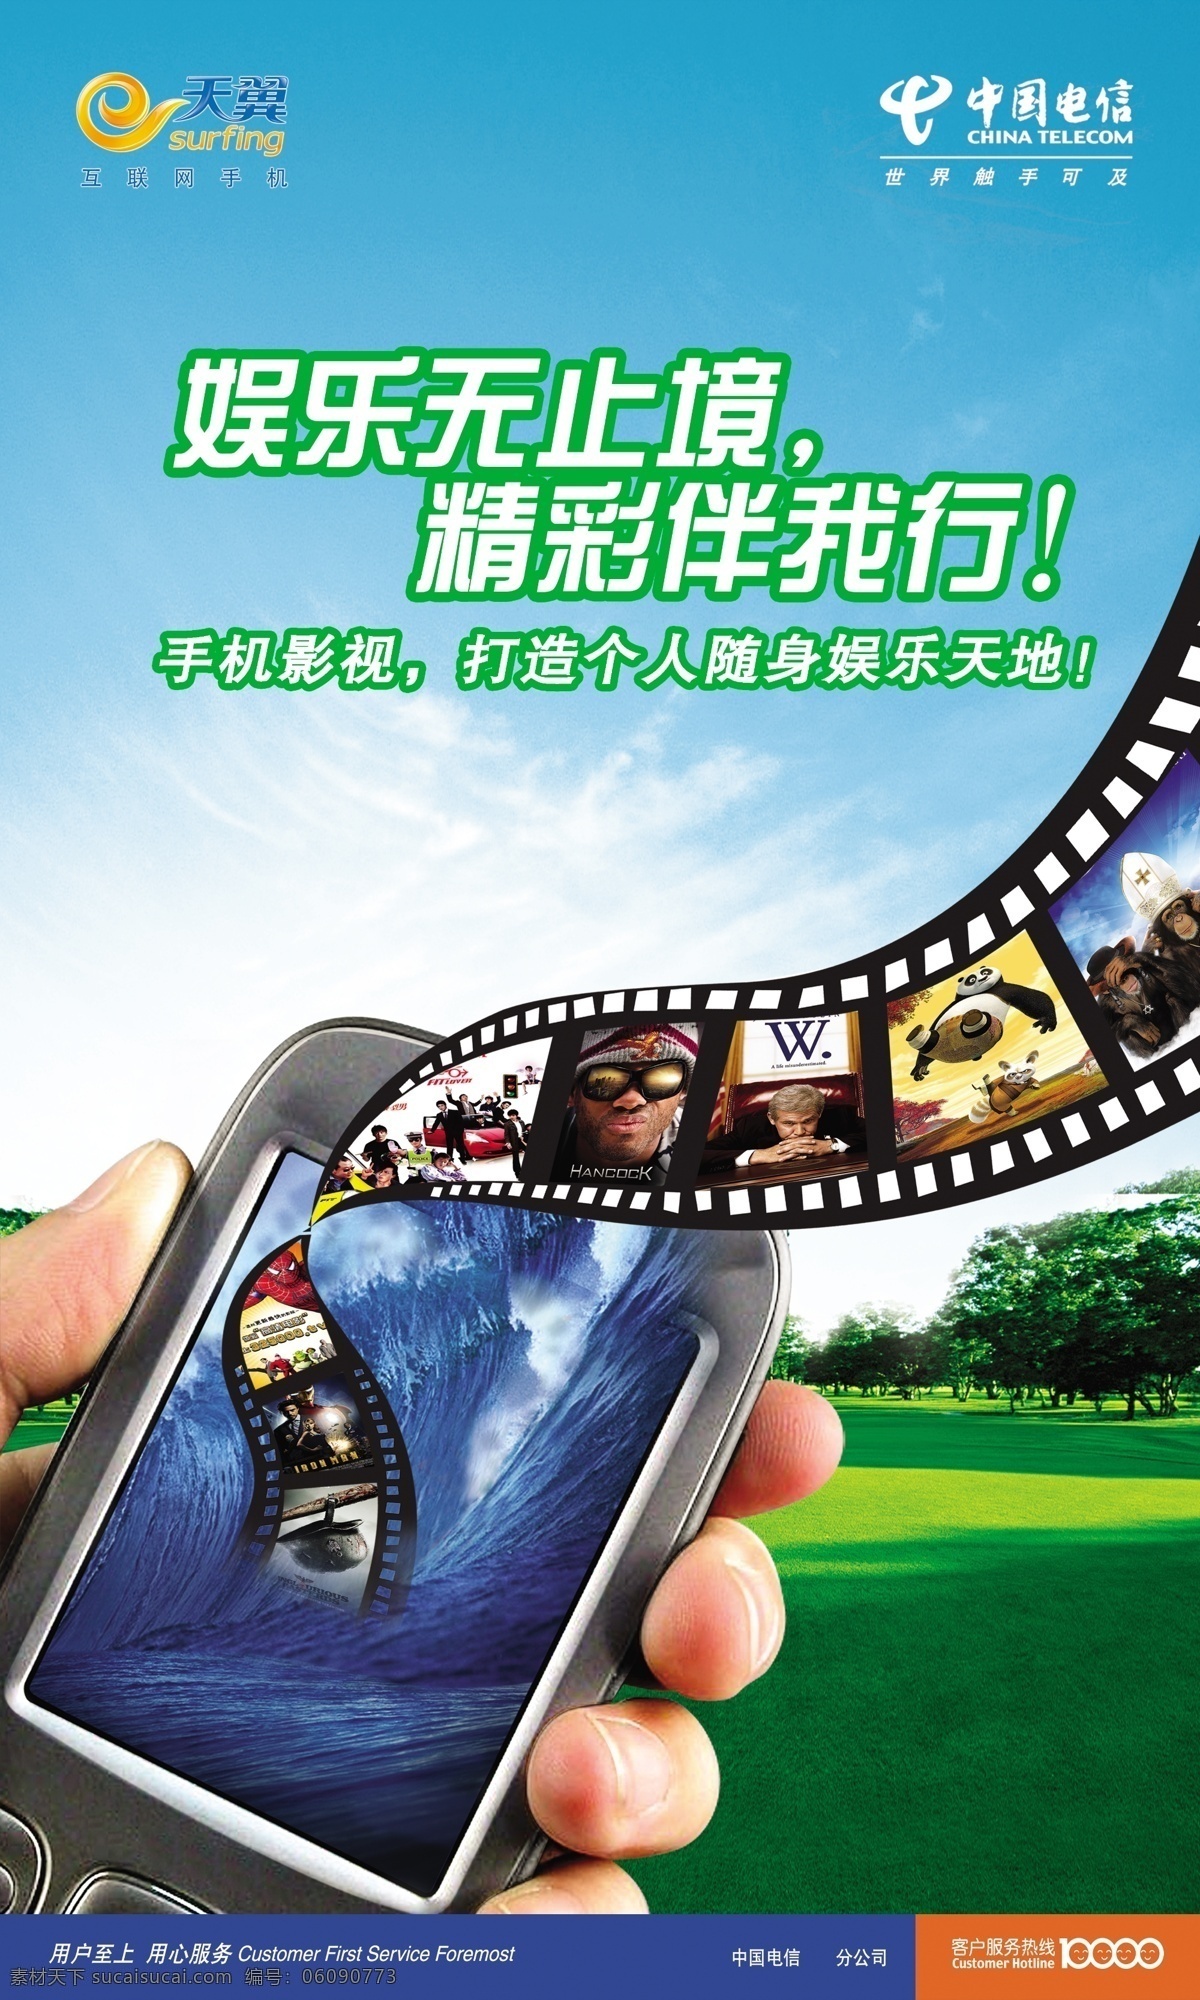 影视海报 模版下载 电信 3g 中国电信 手机 电影胶片 广告设计模板 源文件